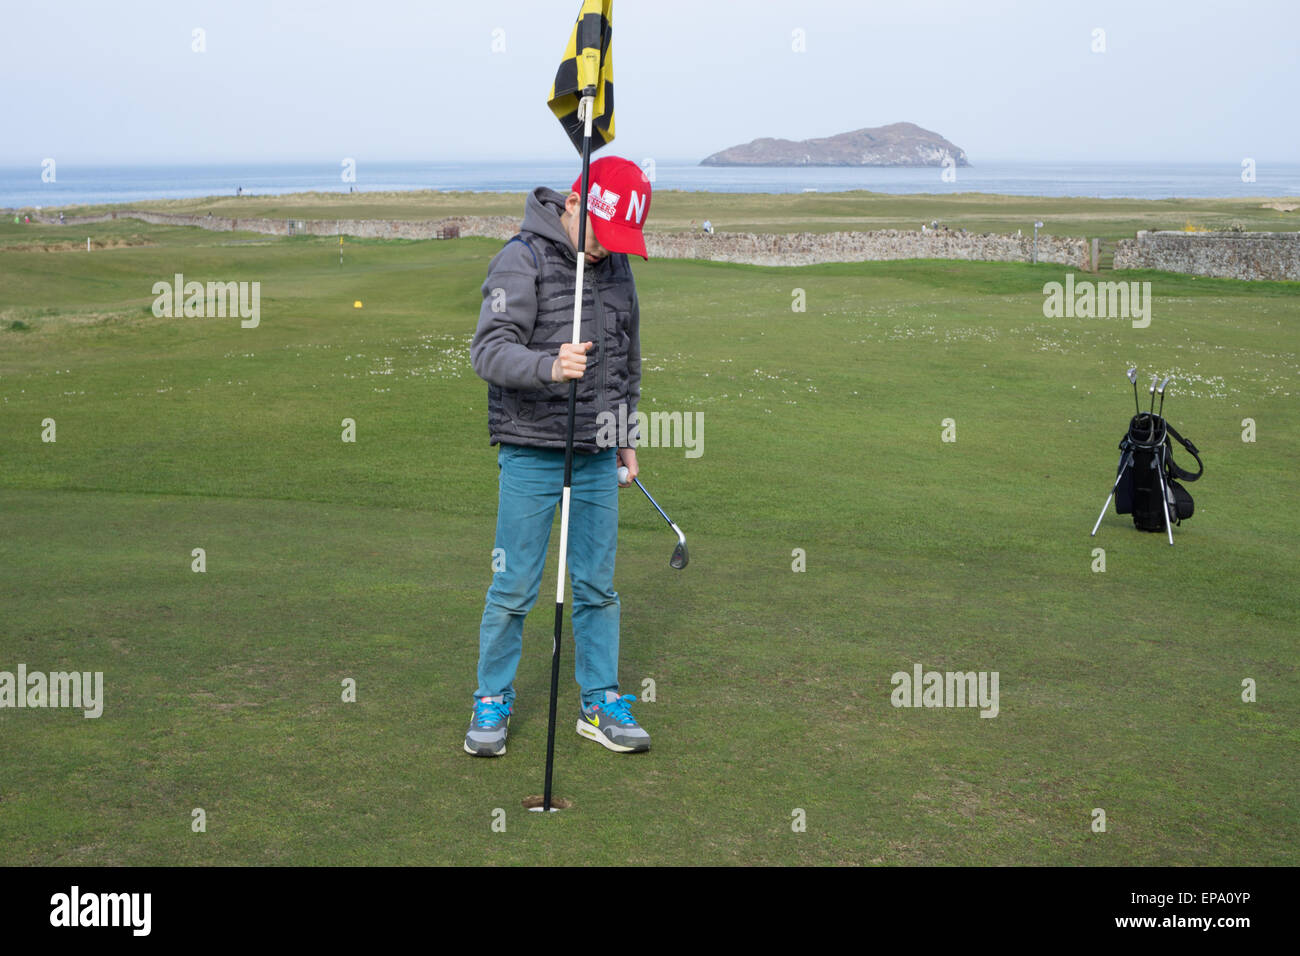 Niño de 10 años jugando al golf Foto de stock